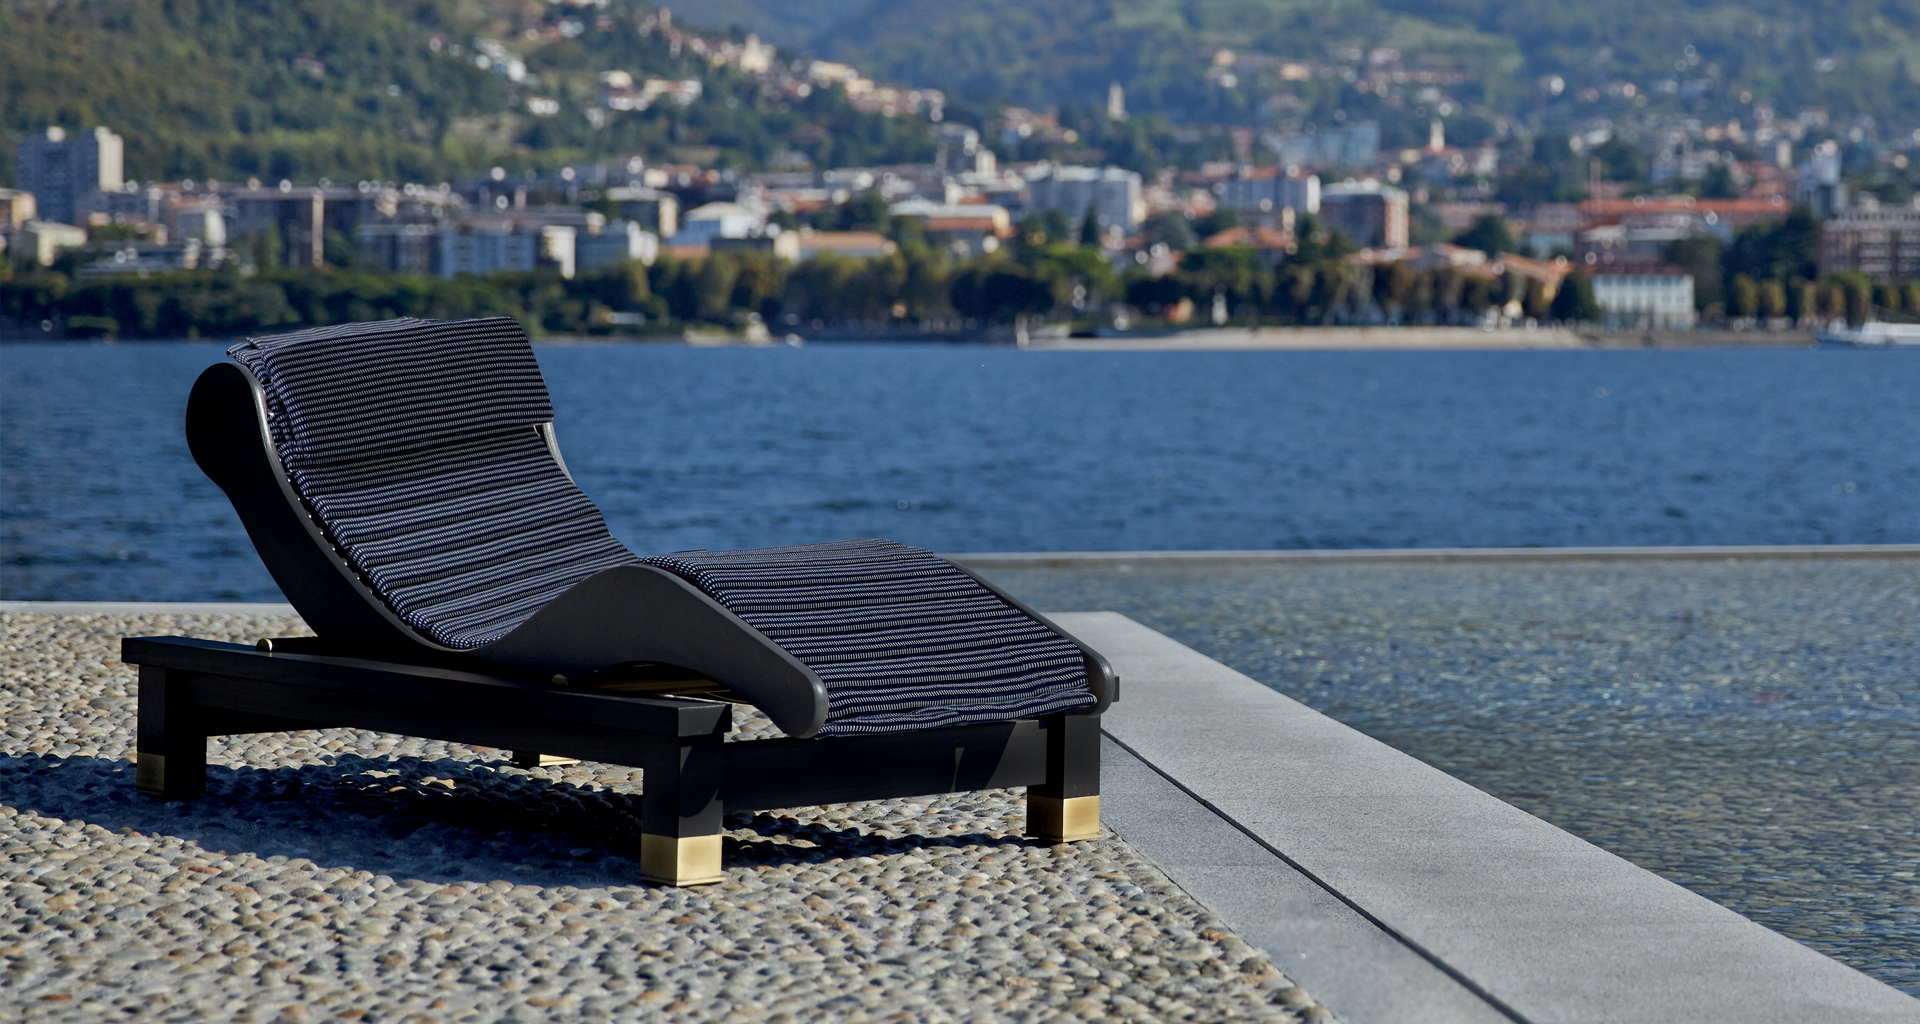 Belvedere è una chaise longue-dormeuse in legno con dettagli in okumé e bronzo, del catalogo da esterni di Promemoria | Promemoria